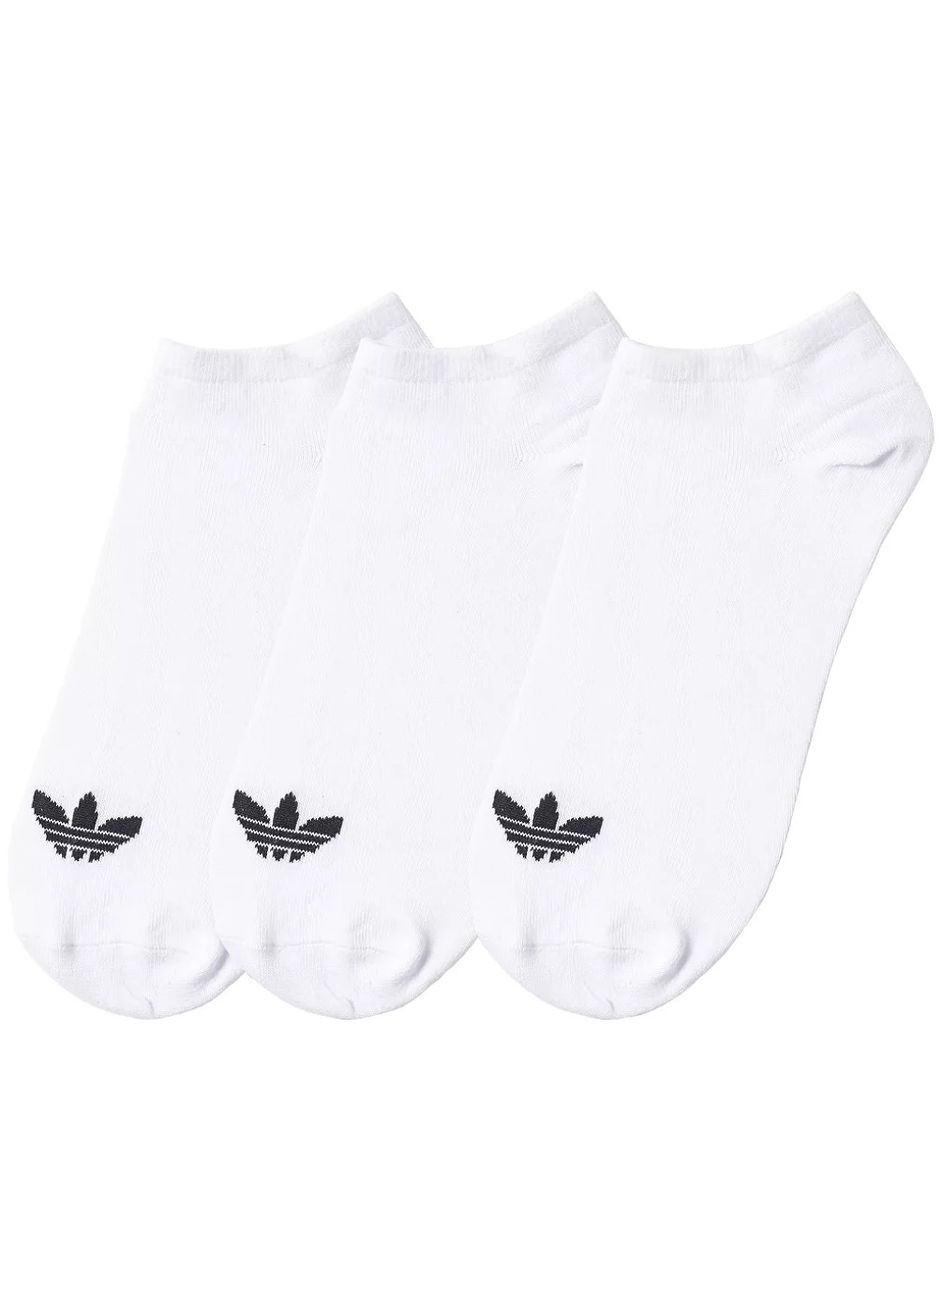 Носки Originals Trefoil Liner белые размер 39-42 (3 пары) adidas (292324202)